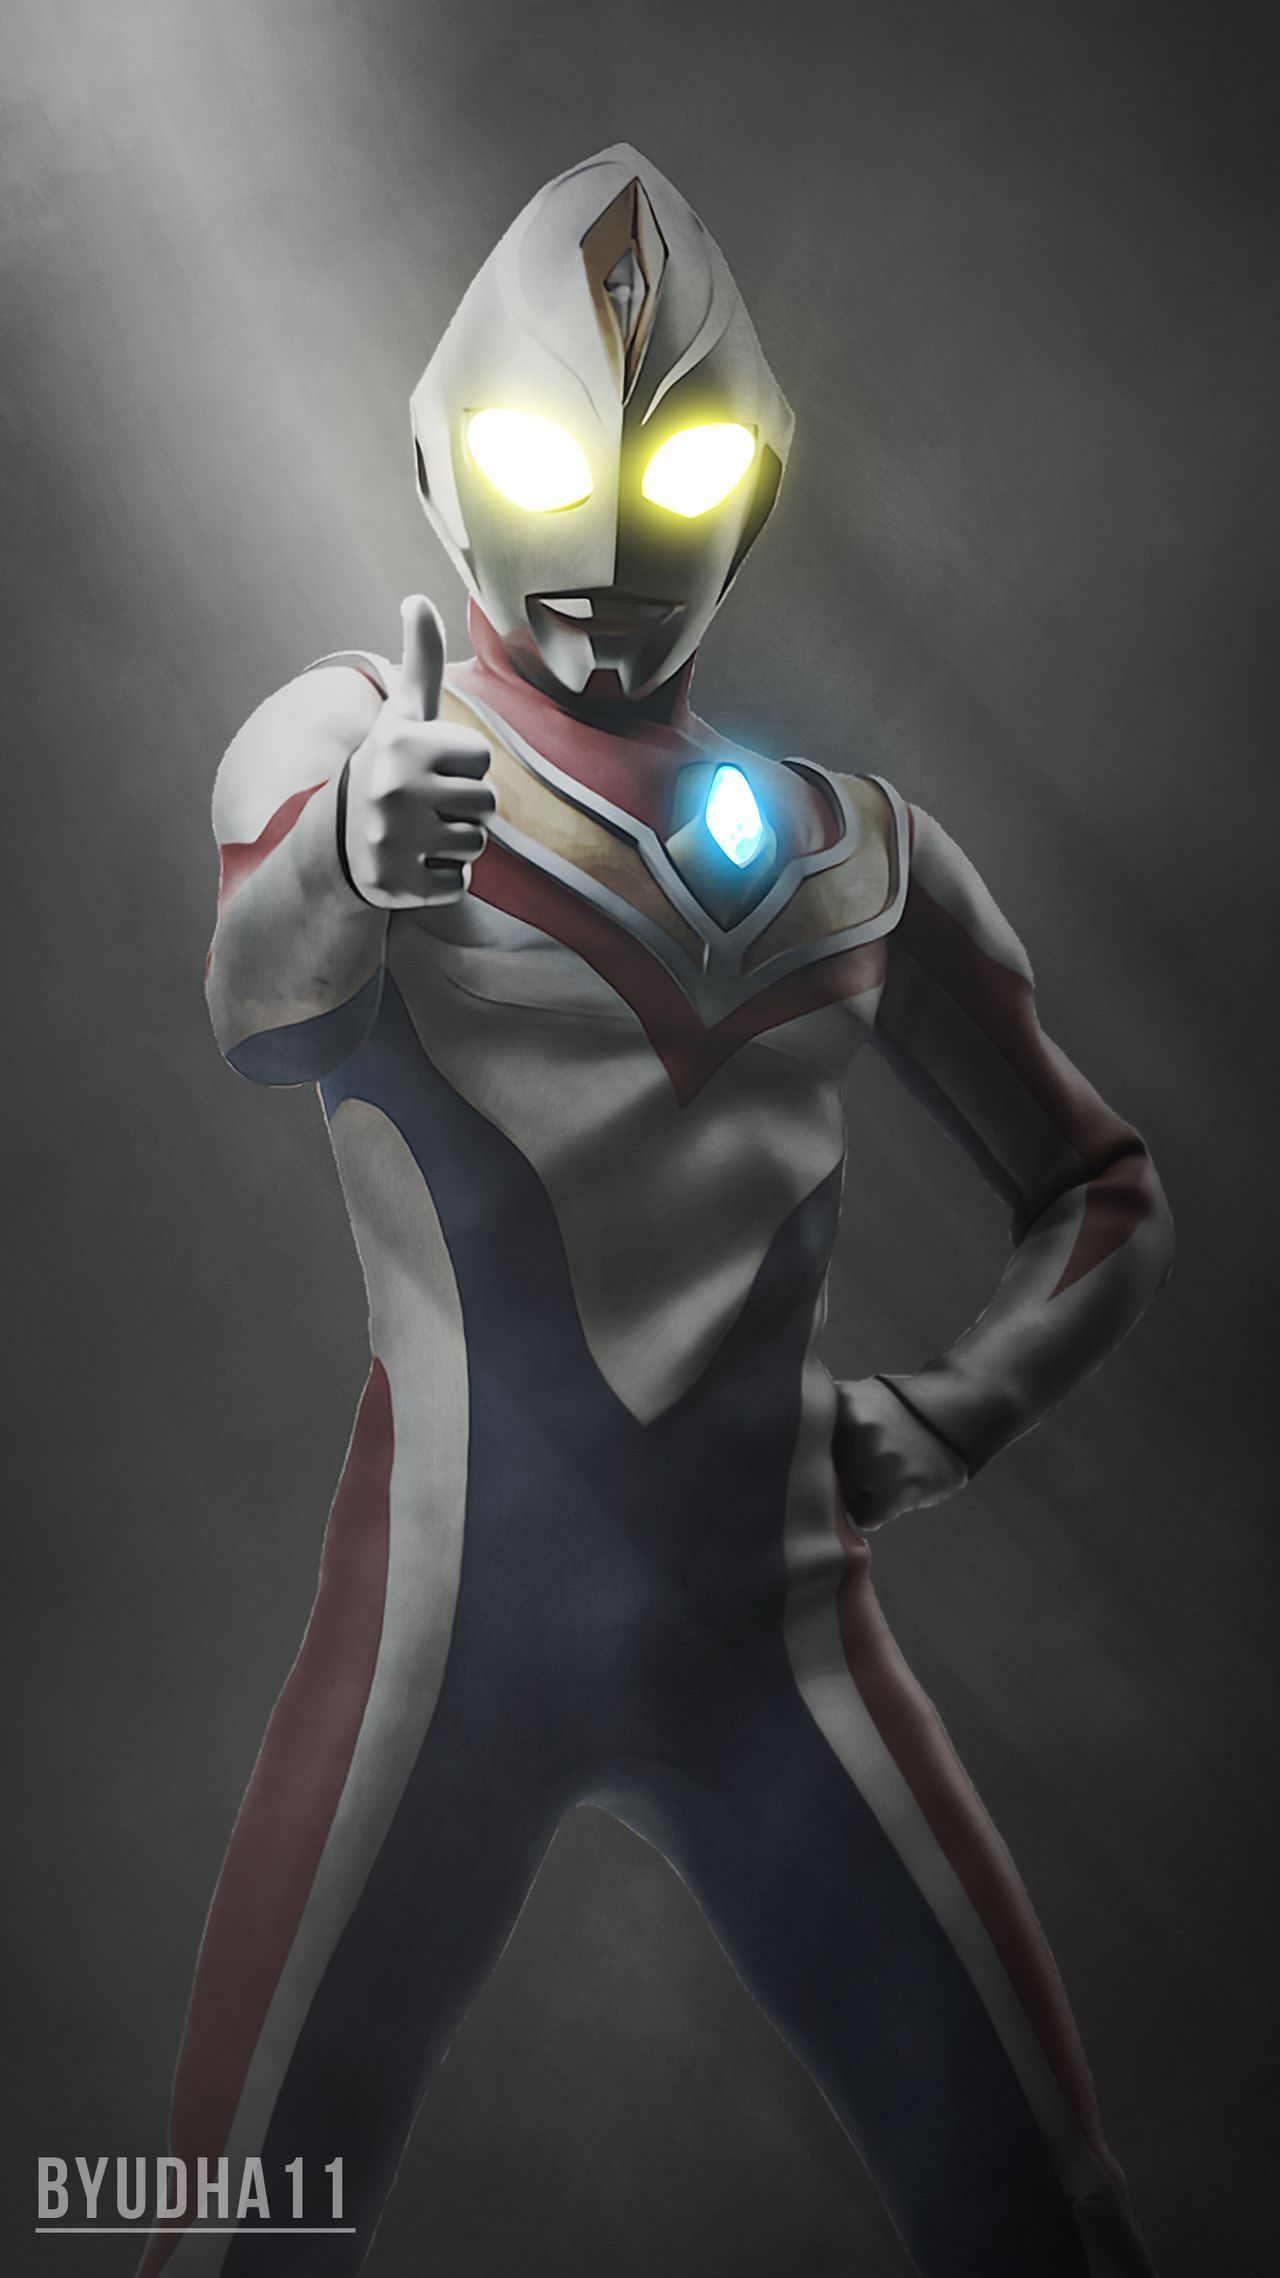 Ultraman Dyna Wallpaper. Kartun, Animasi, Gambar